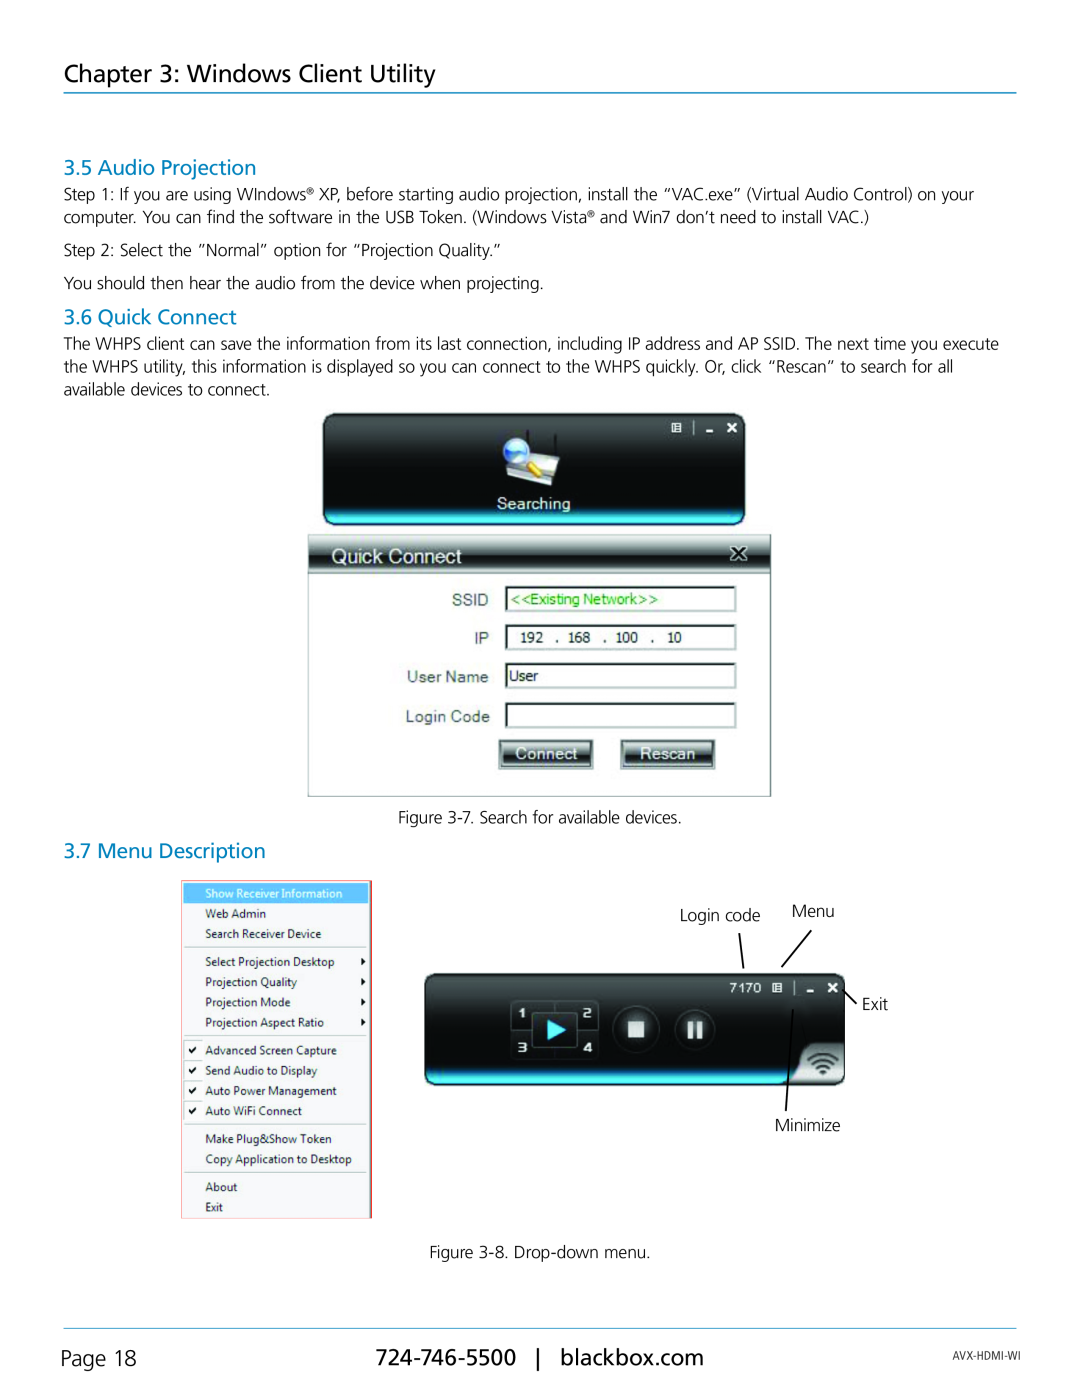 Black Box AVX-HDMI-WI manual Audio Projection, Quick Connect, Menu Description, Windows Client Utility, Page 